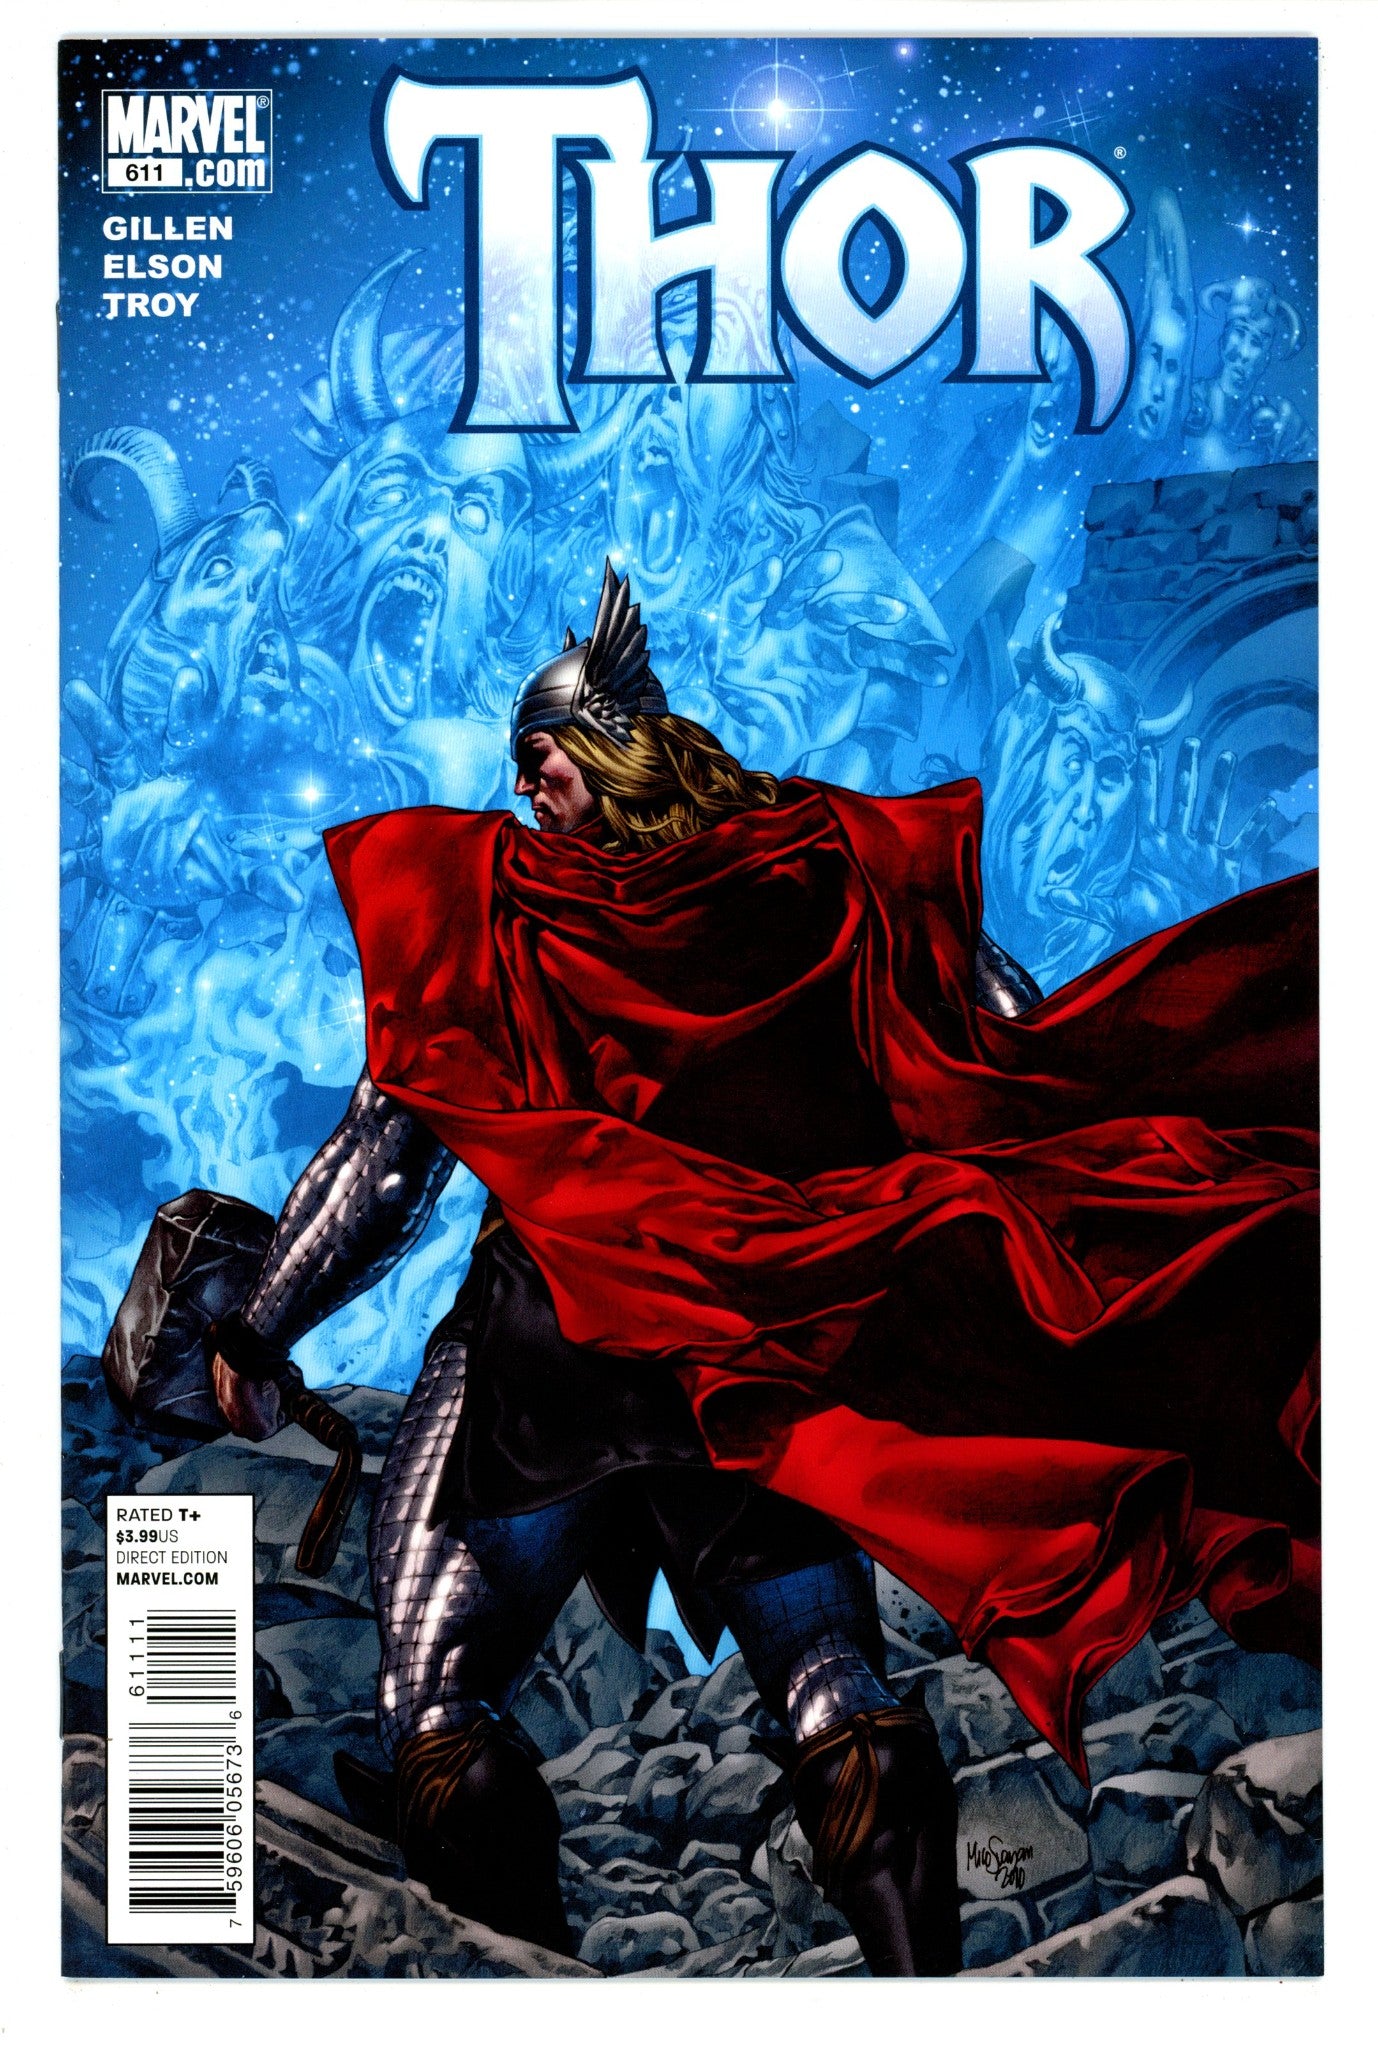 Thor Vol 3 611 High Grade (2010) 